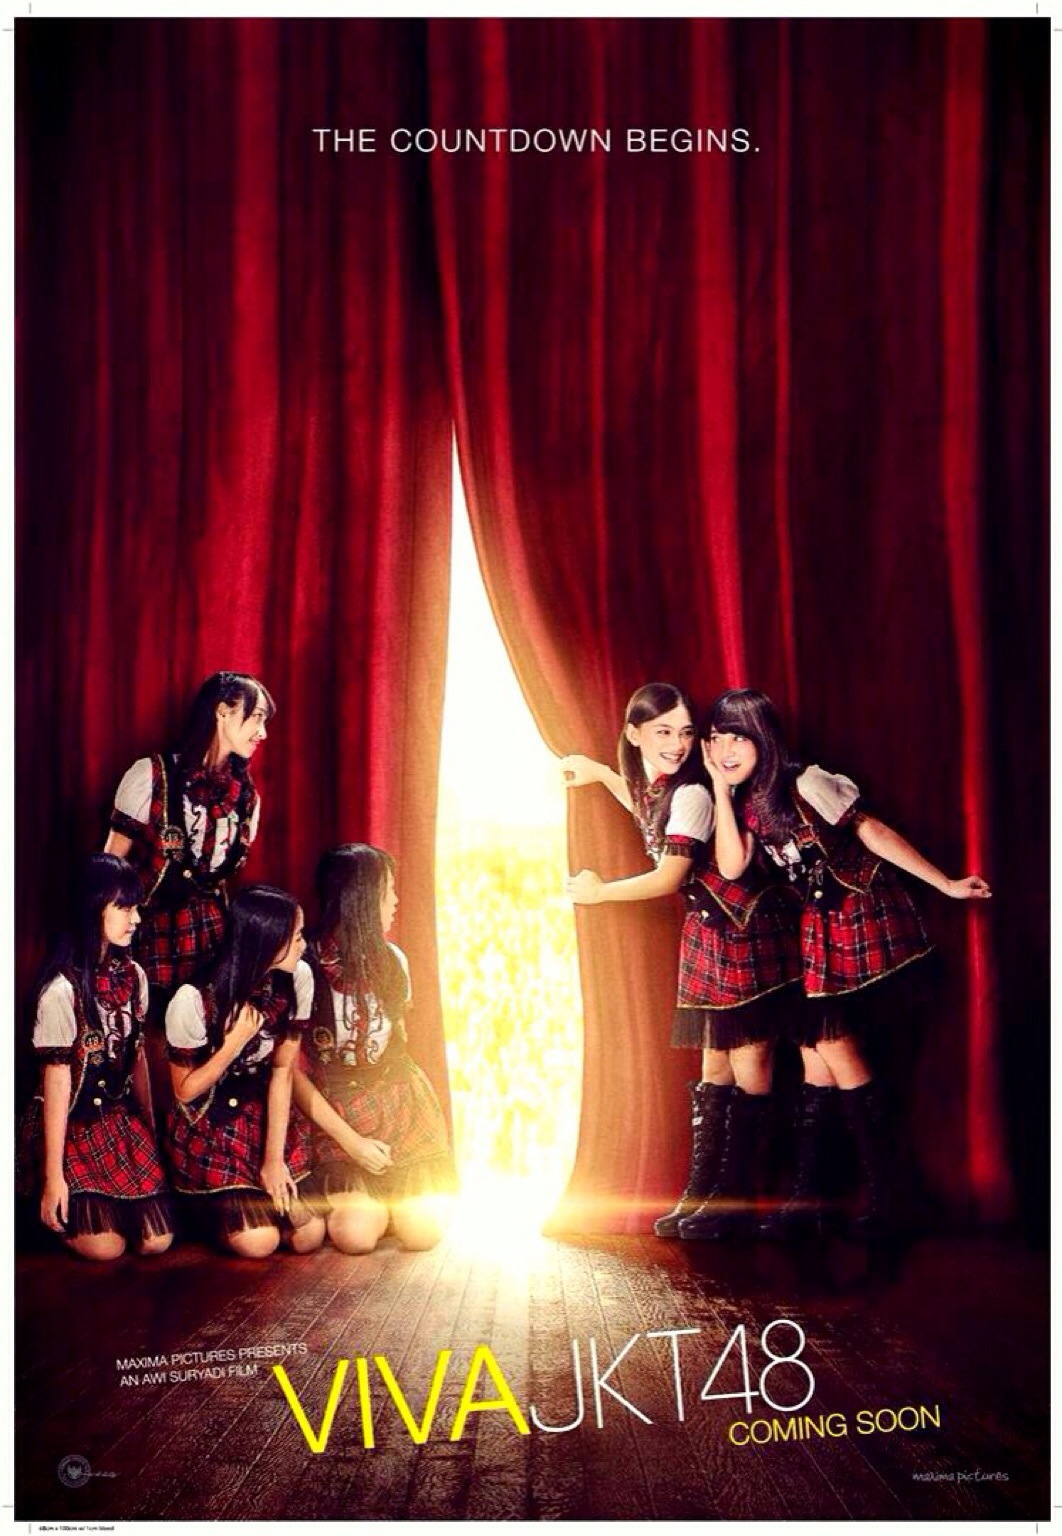 VIVA_JKT48_Poster